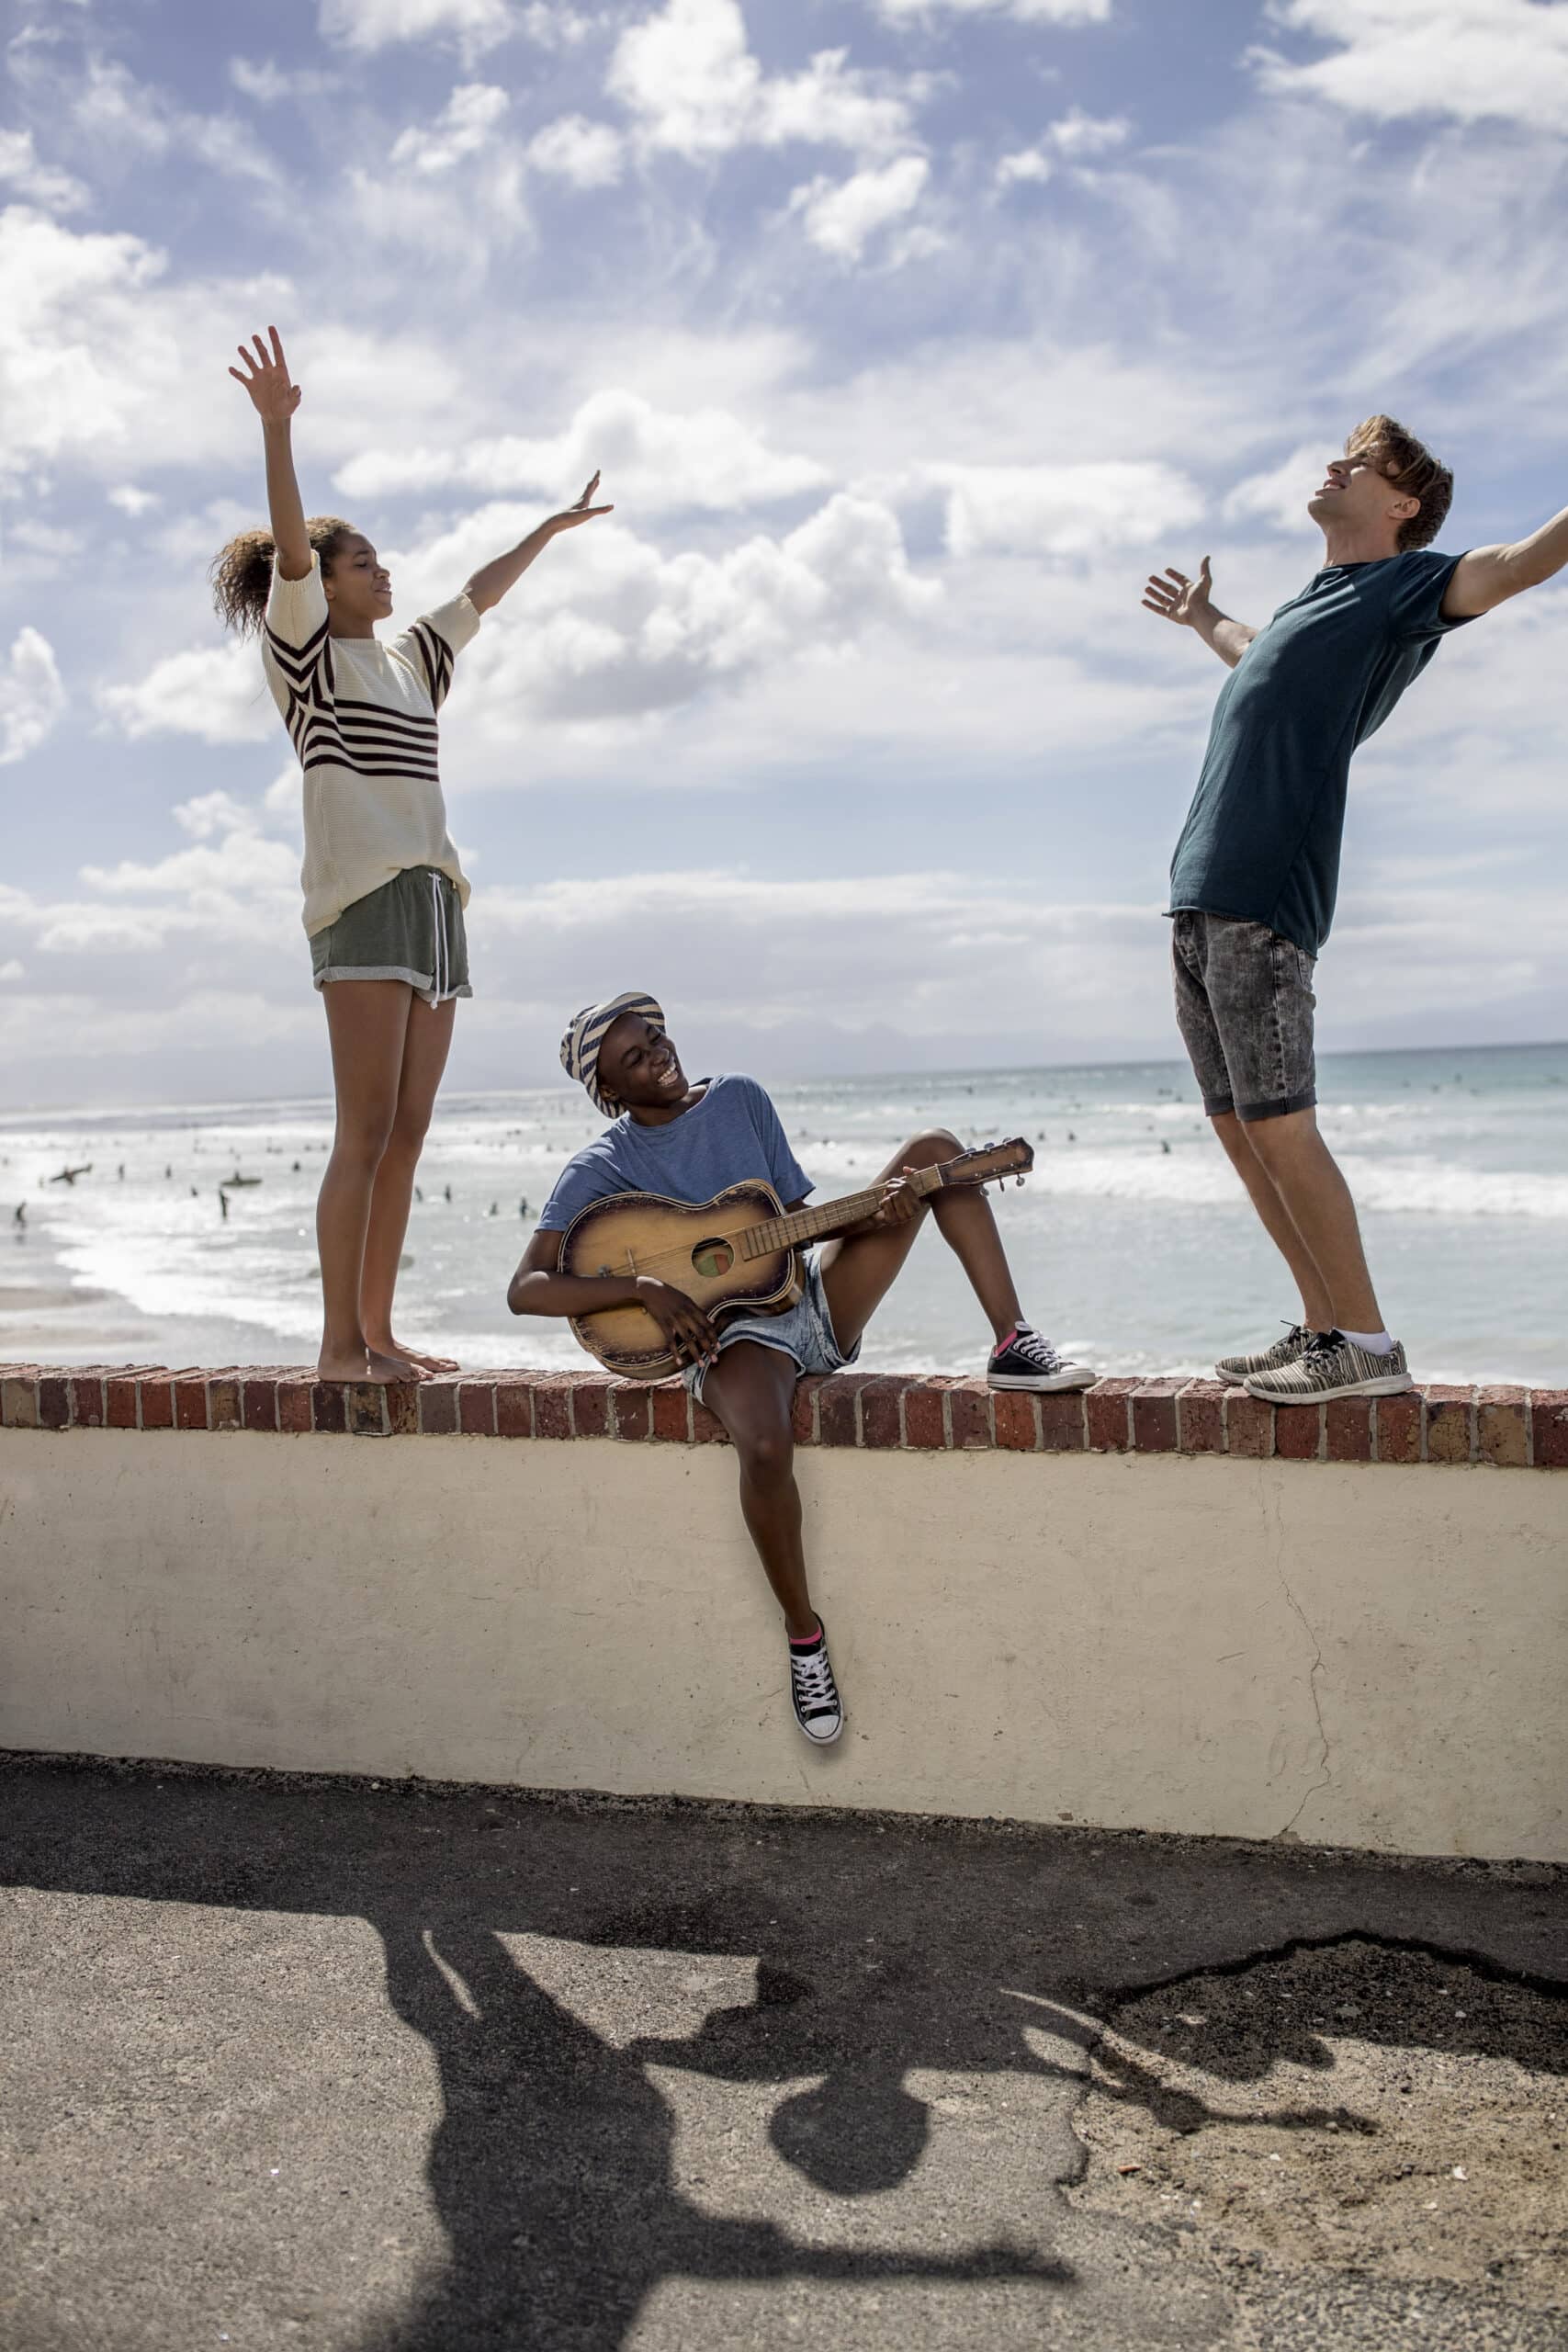 Drei Freunde vergnügen sich am Strand. Zwei stehen auf einer Mauer und strecken sich nach oben, während einer sitzt und Gitarre spielt. Im Hintergrund sehen Sie einen bewölkten Himmel und ein ruhiges Meer. © Fotografie Tomas Rodriguez